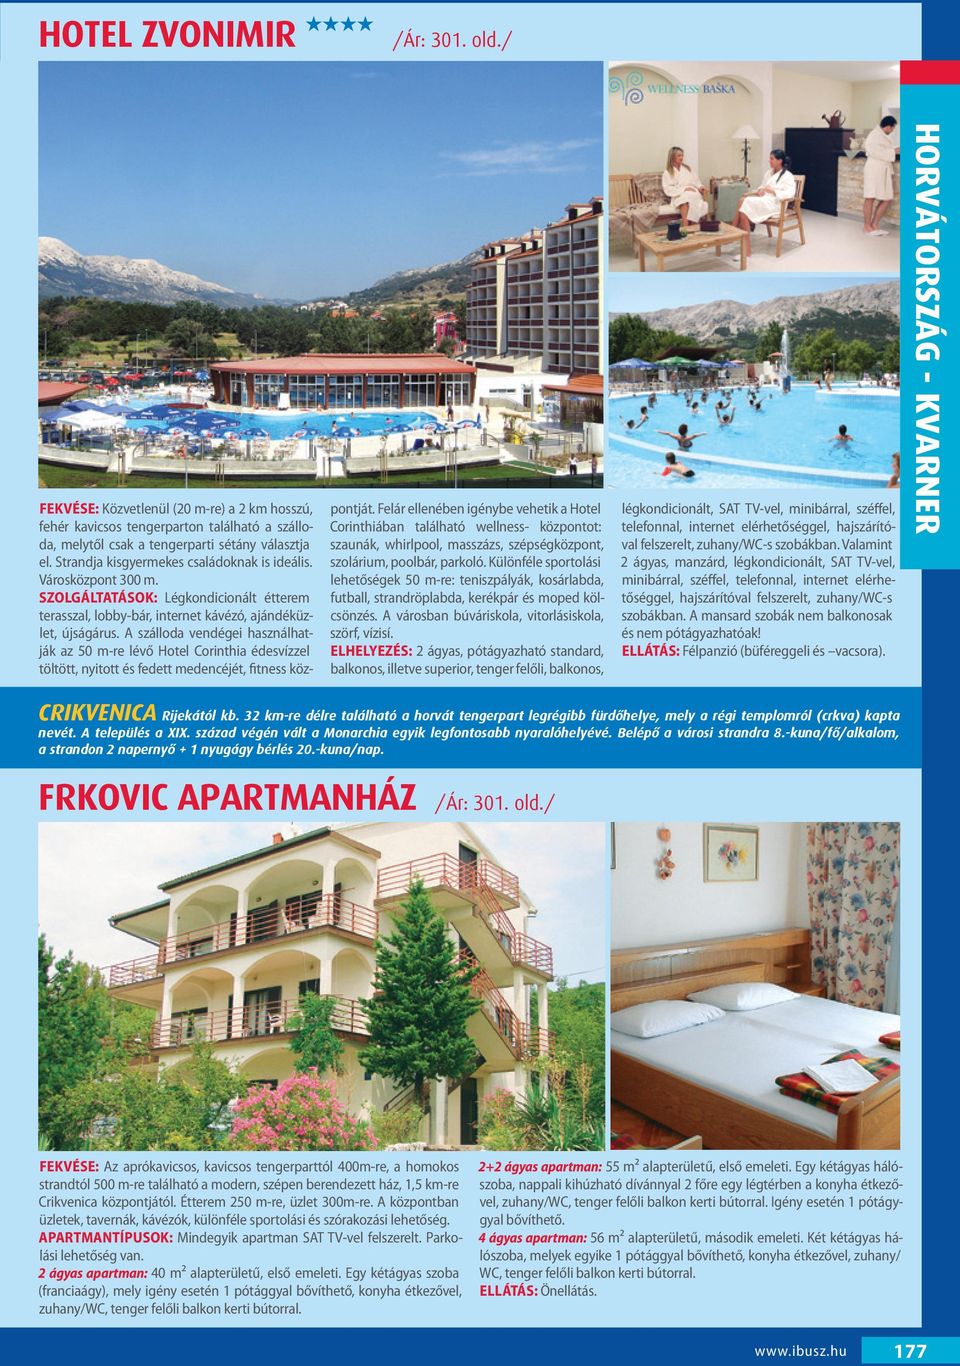 A szálloda vendégei használhatják az 50 m-re lévő Hotel Corinthia édesvízzel töltött, nyitott és fedett medencéjét, fitness központját.